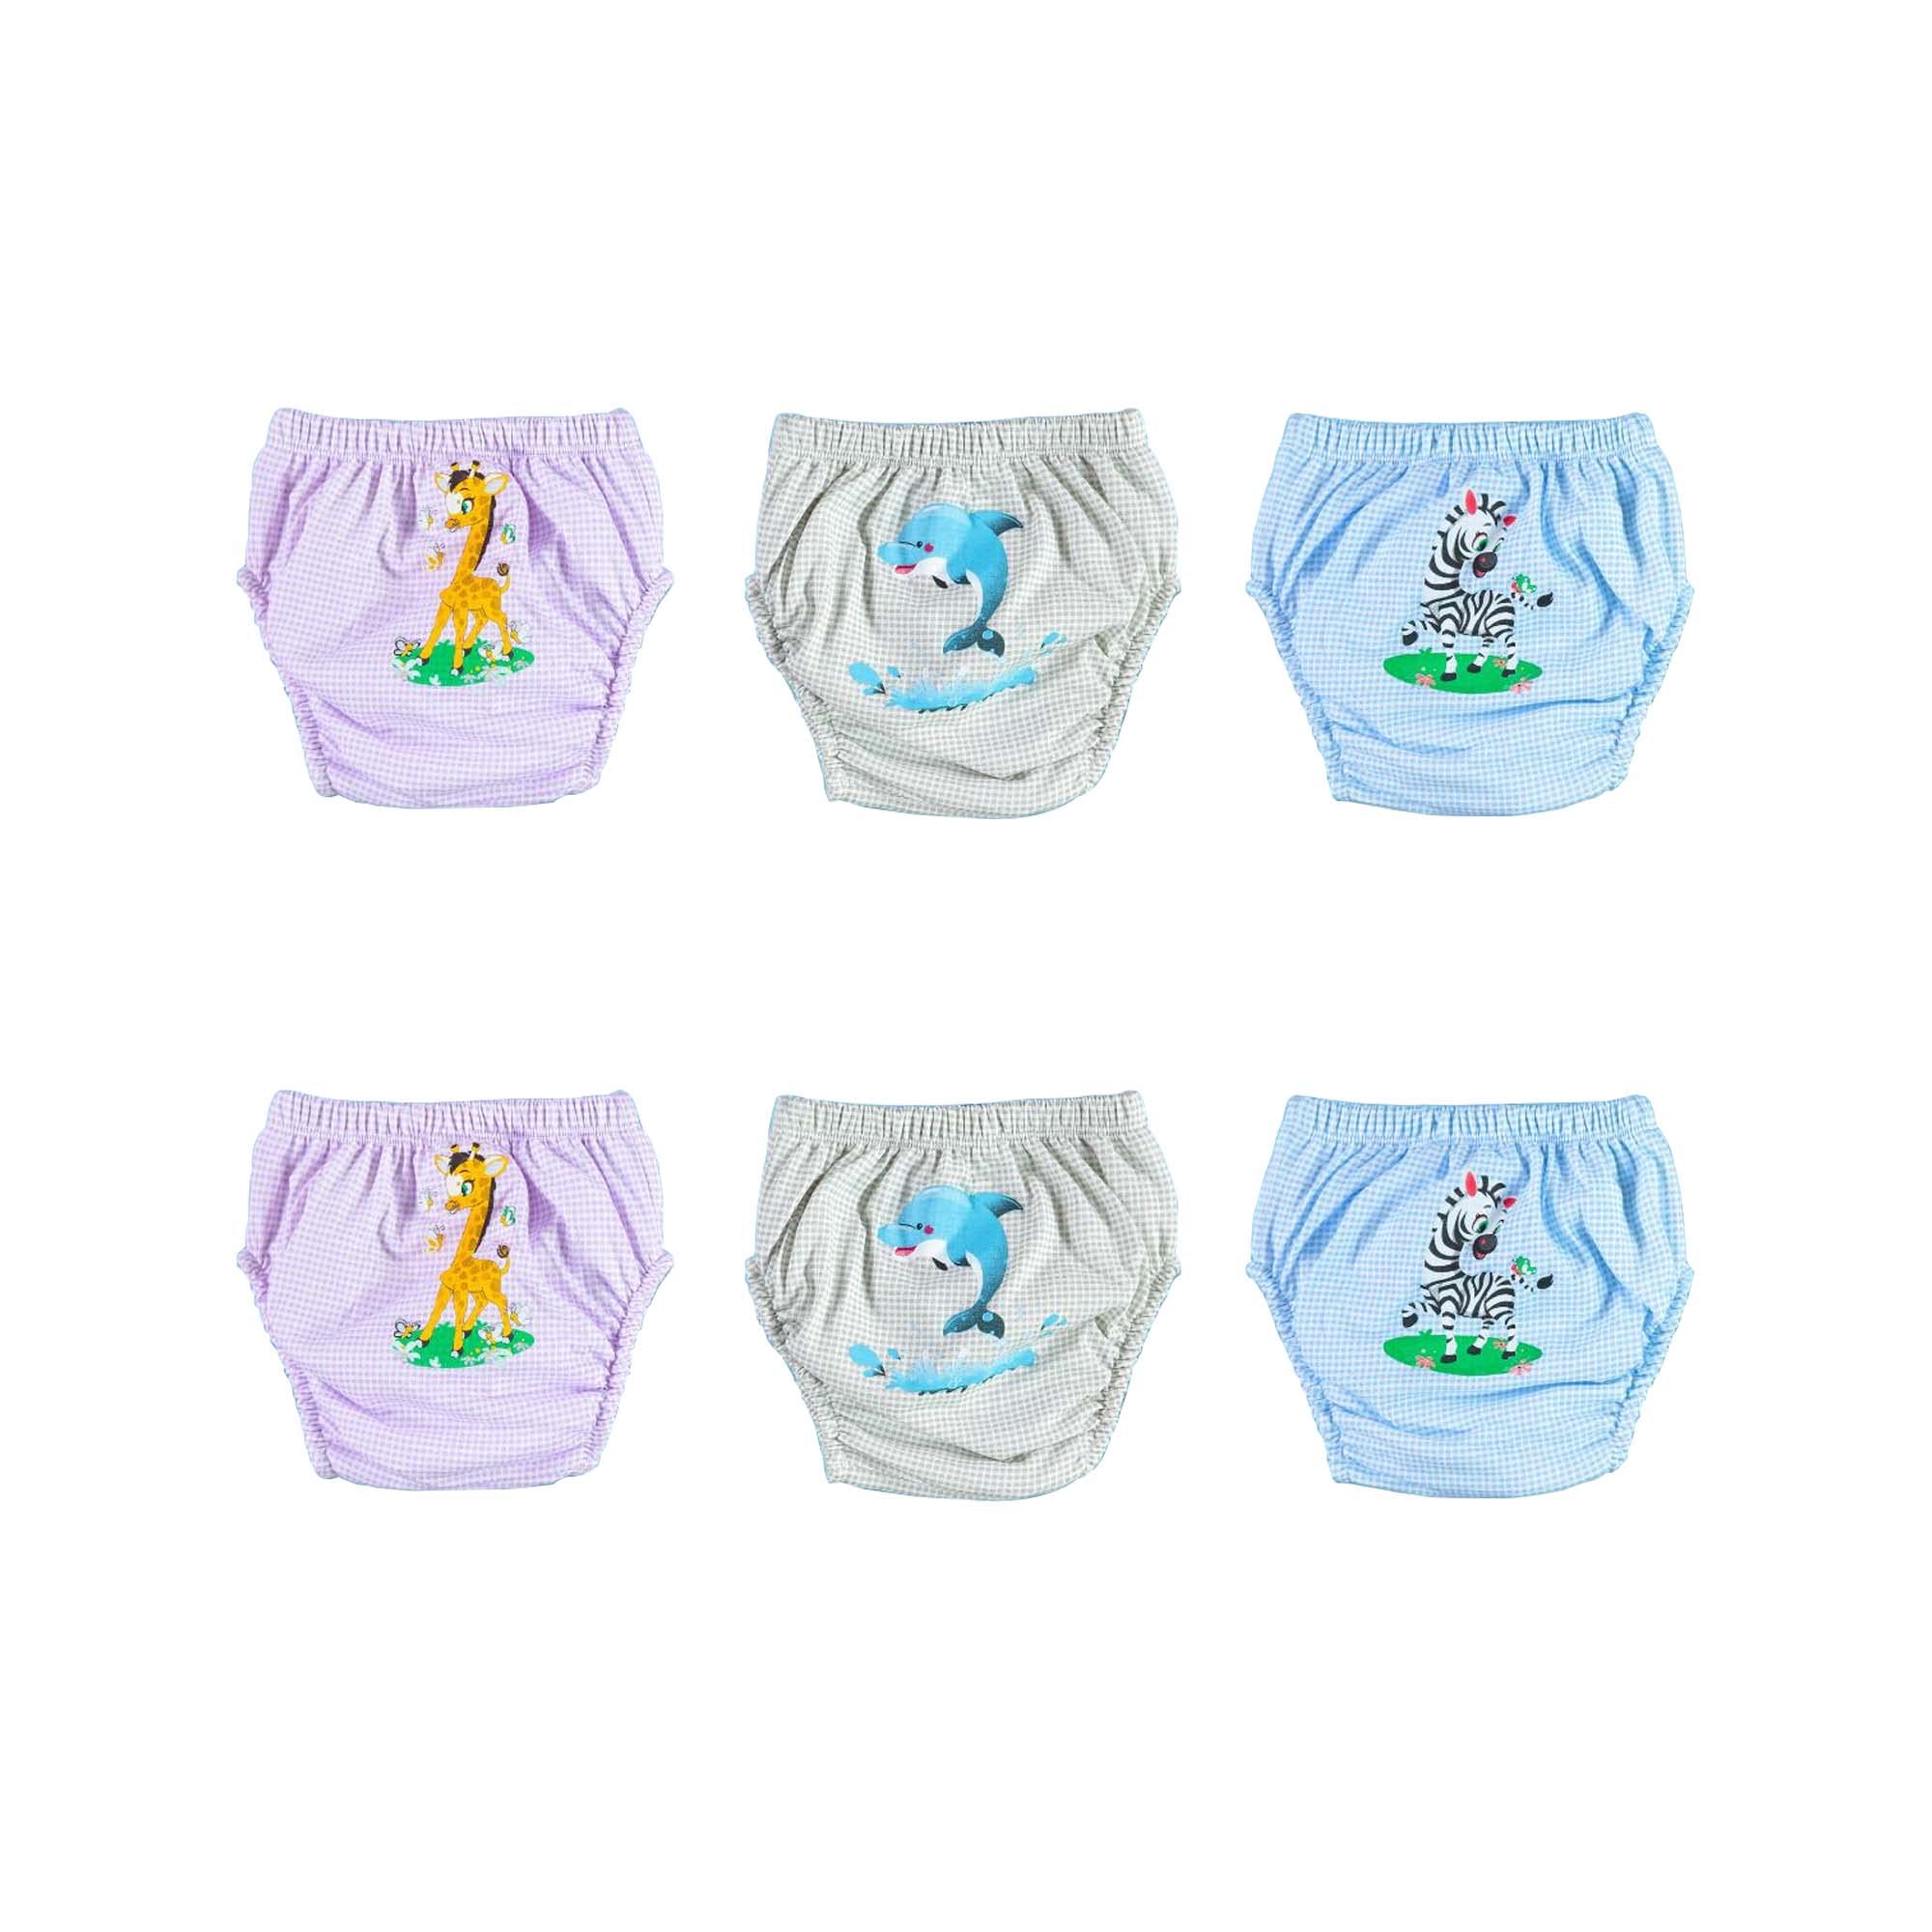 OZYOL Trainerhosen für Tröpfchentraining 6er Pack - Wiederverwendbare Kleinkinder Windelhosen Lernwindeln Trainerwindeln Baby Unterwäsche zum Sauberwerden Toilettentraining (Safari, 100)